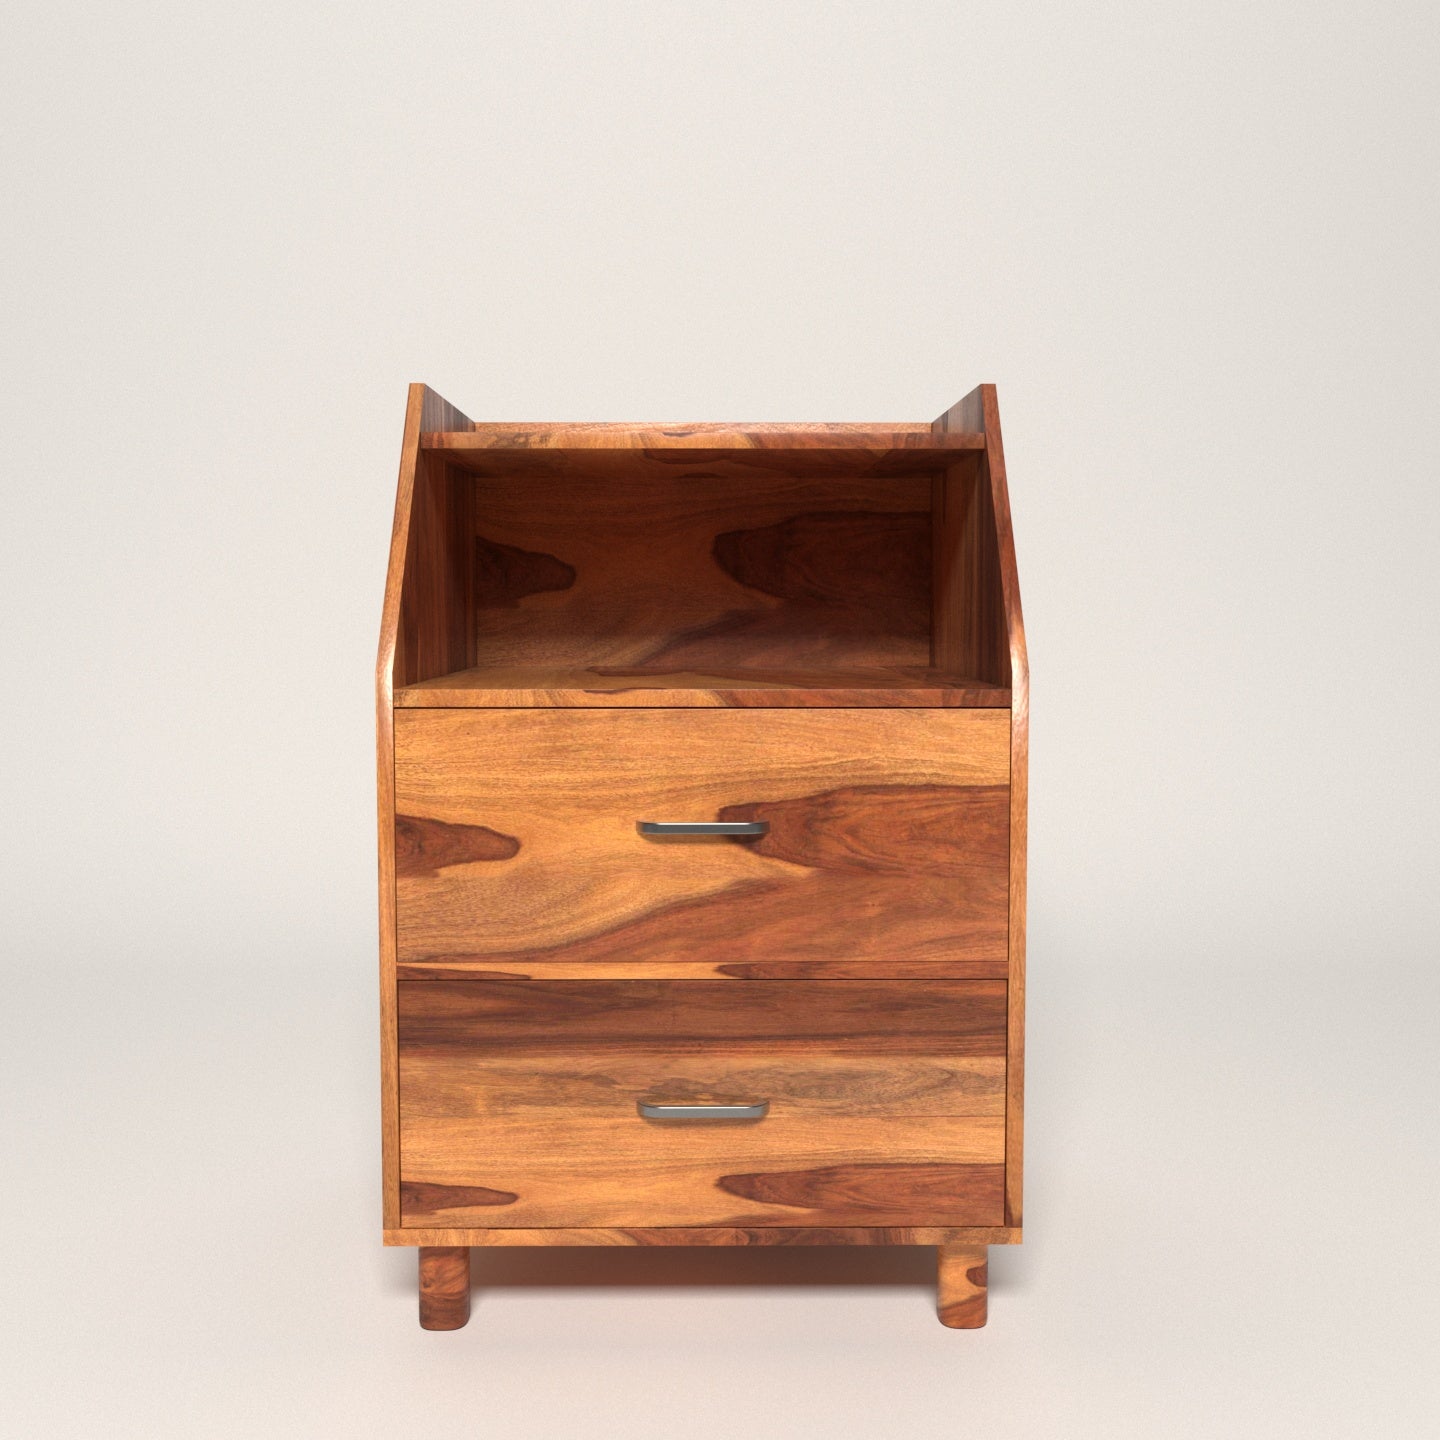 Premium Vintage Sheesham Handmade Wooden Bedside Table for Home Bedside